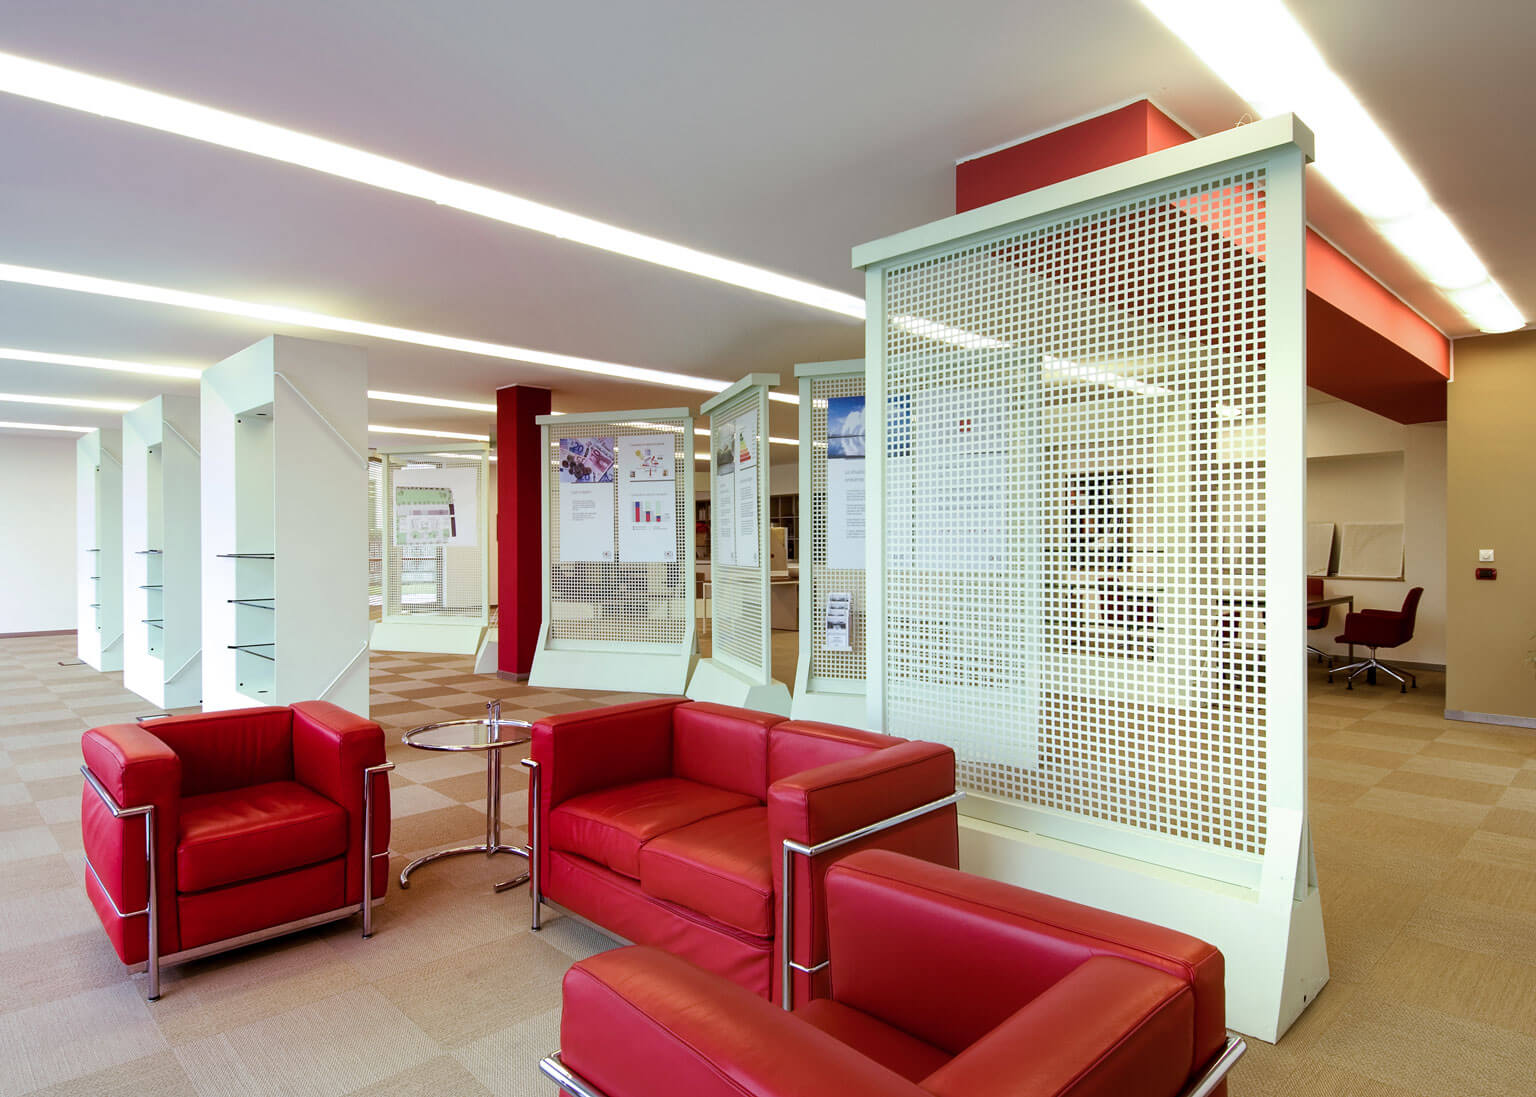 sala d'attesa e showroom design e architettura arredi divano poltrone le corbusier rose sede bazzea vigevano